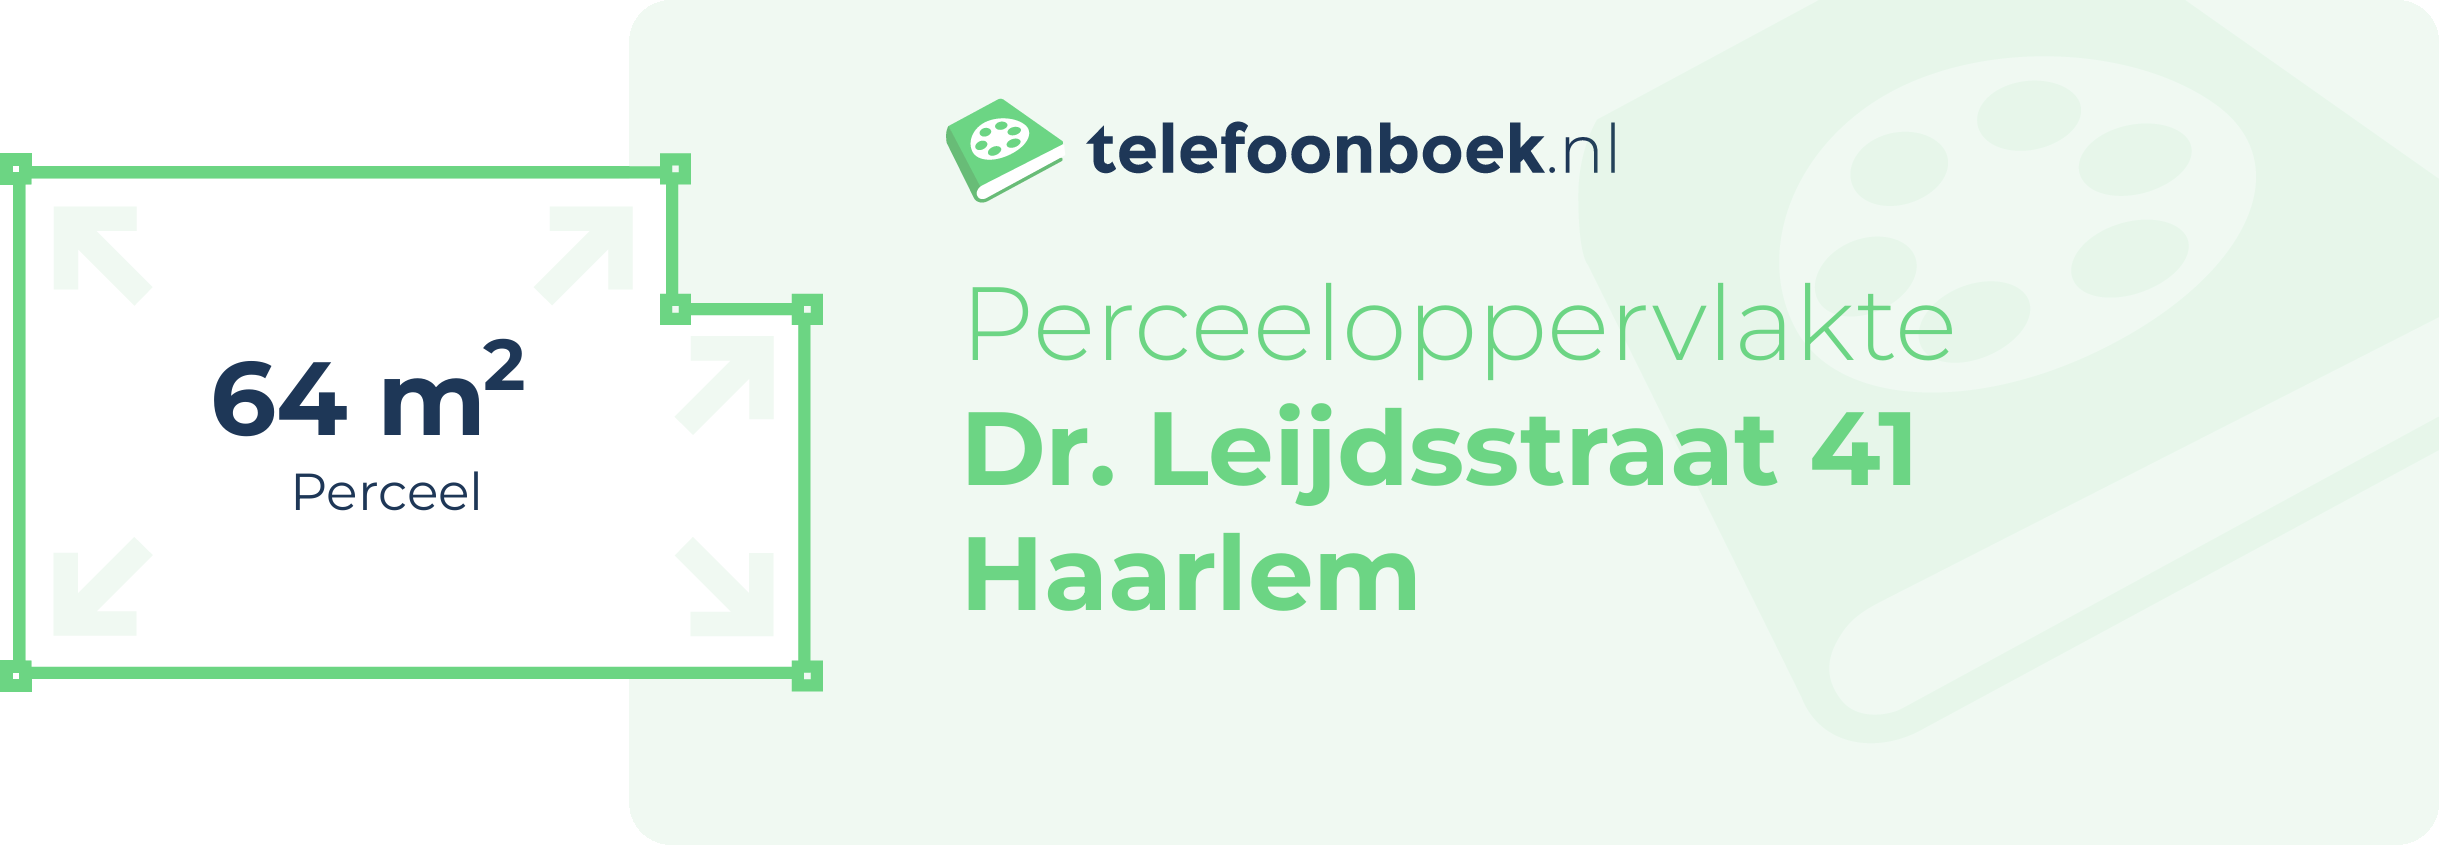 Perceeloppervlakte Dr. Leijdsstraat 41 Haarlem